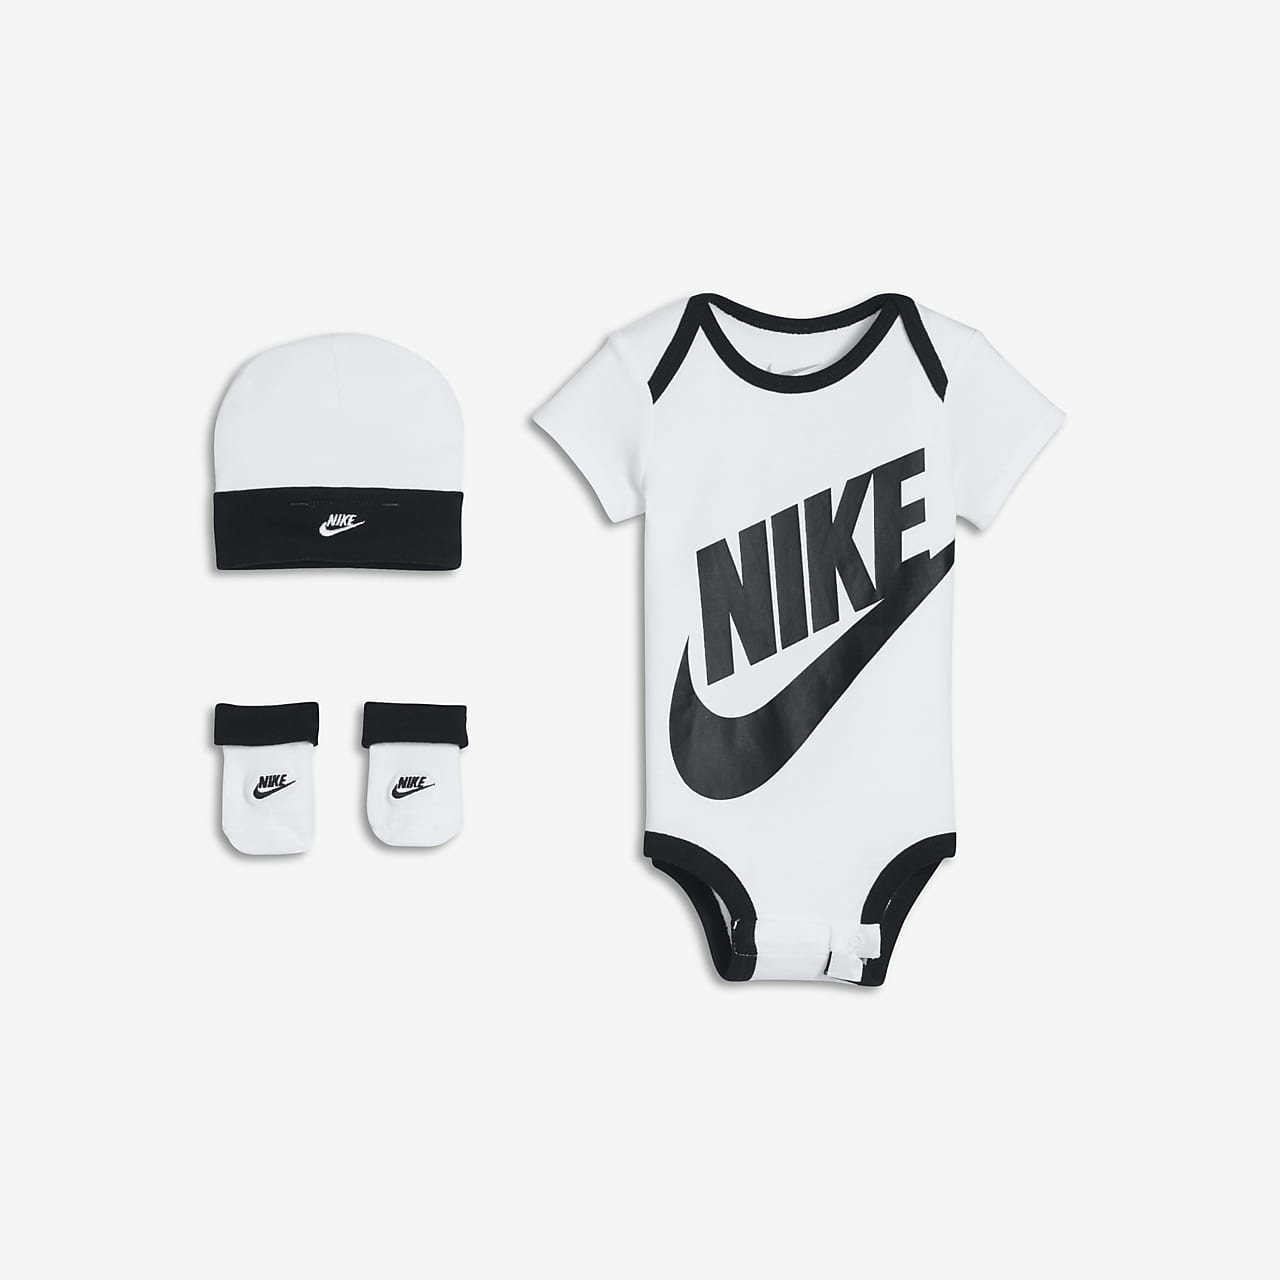  Nike - Bébé Garçon / Vêtements Bébé : Mode